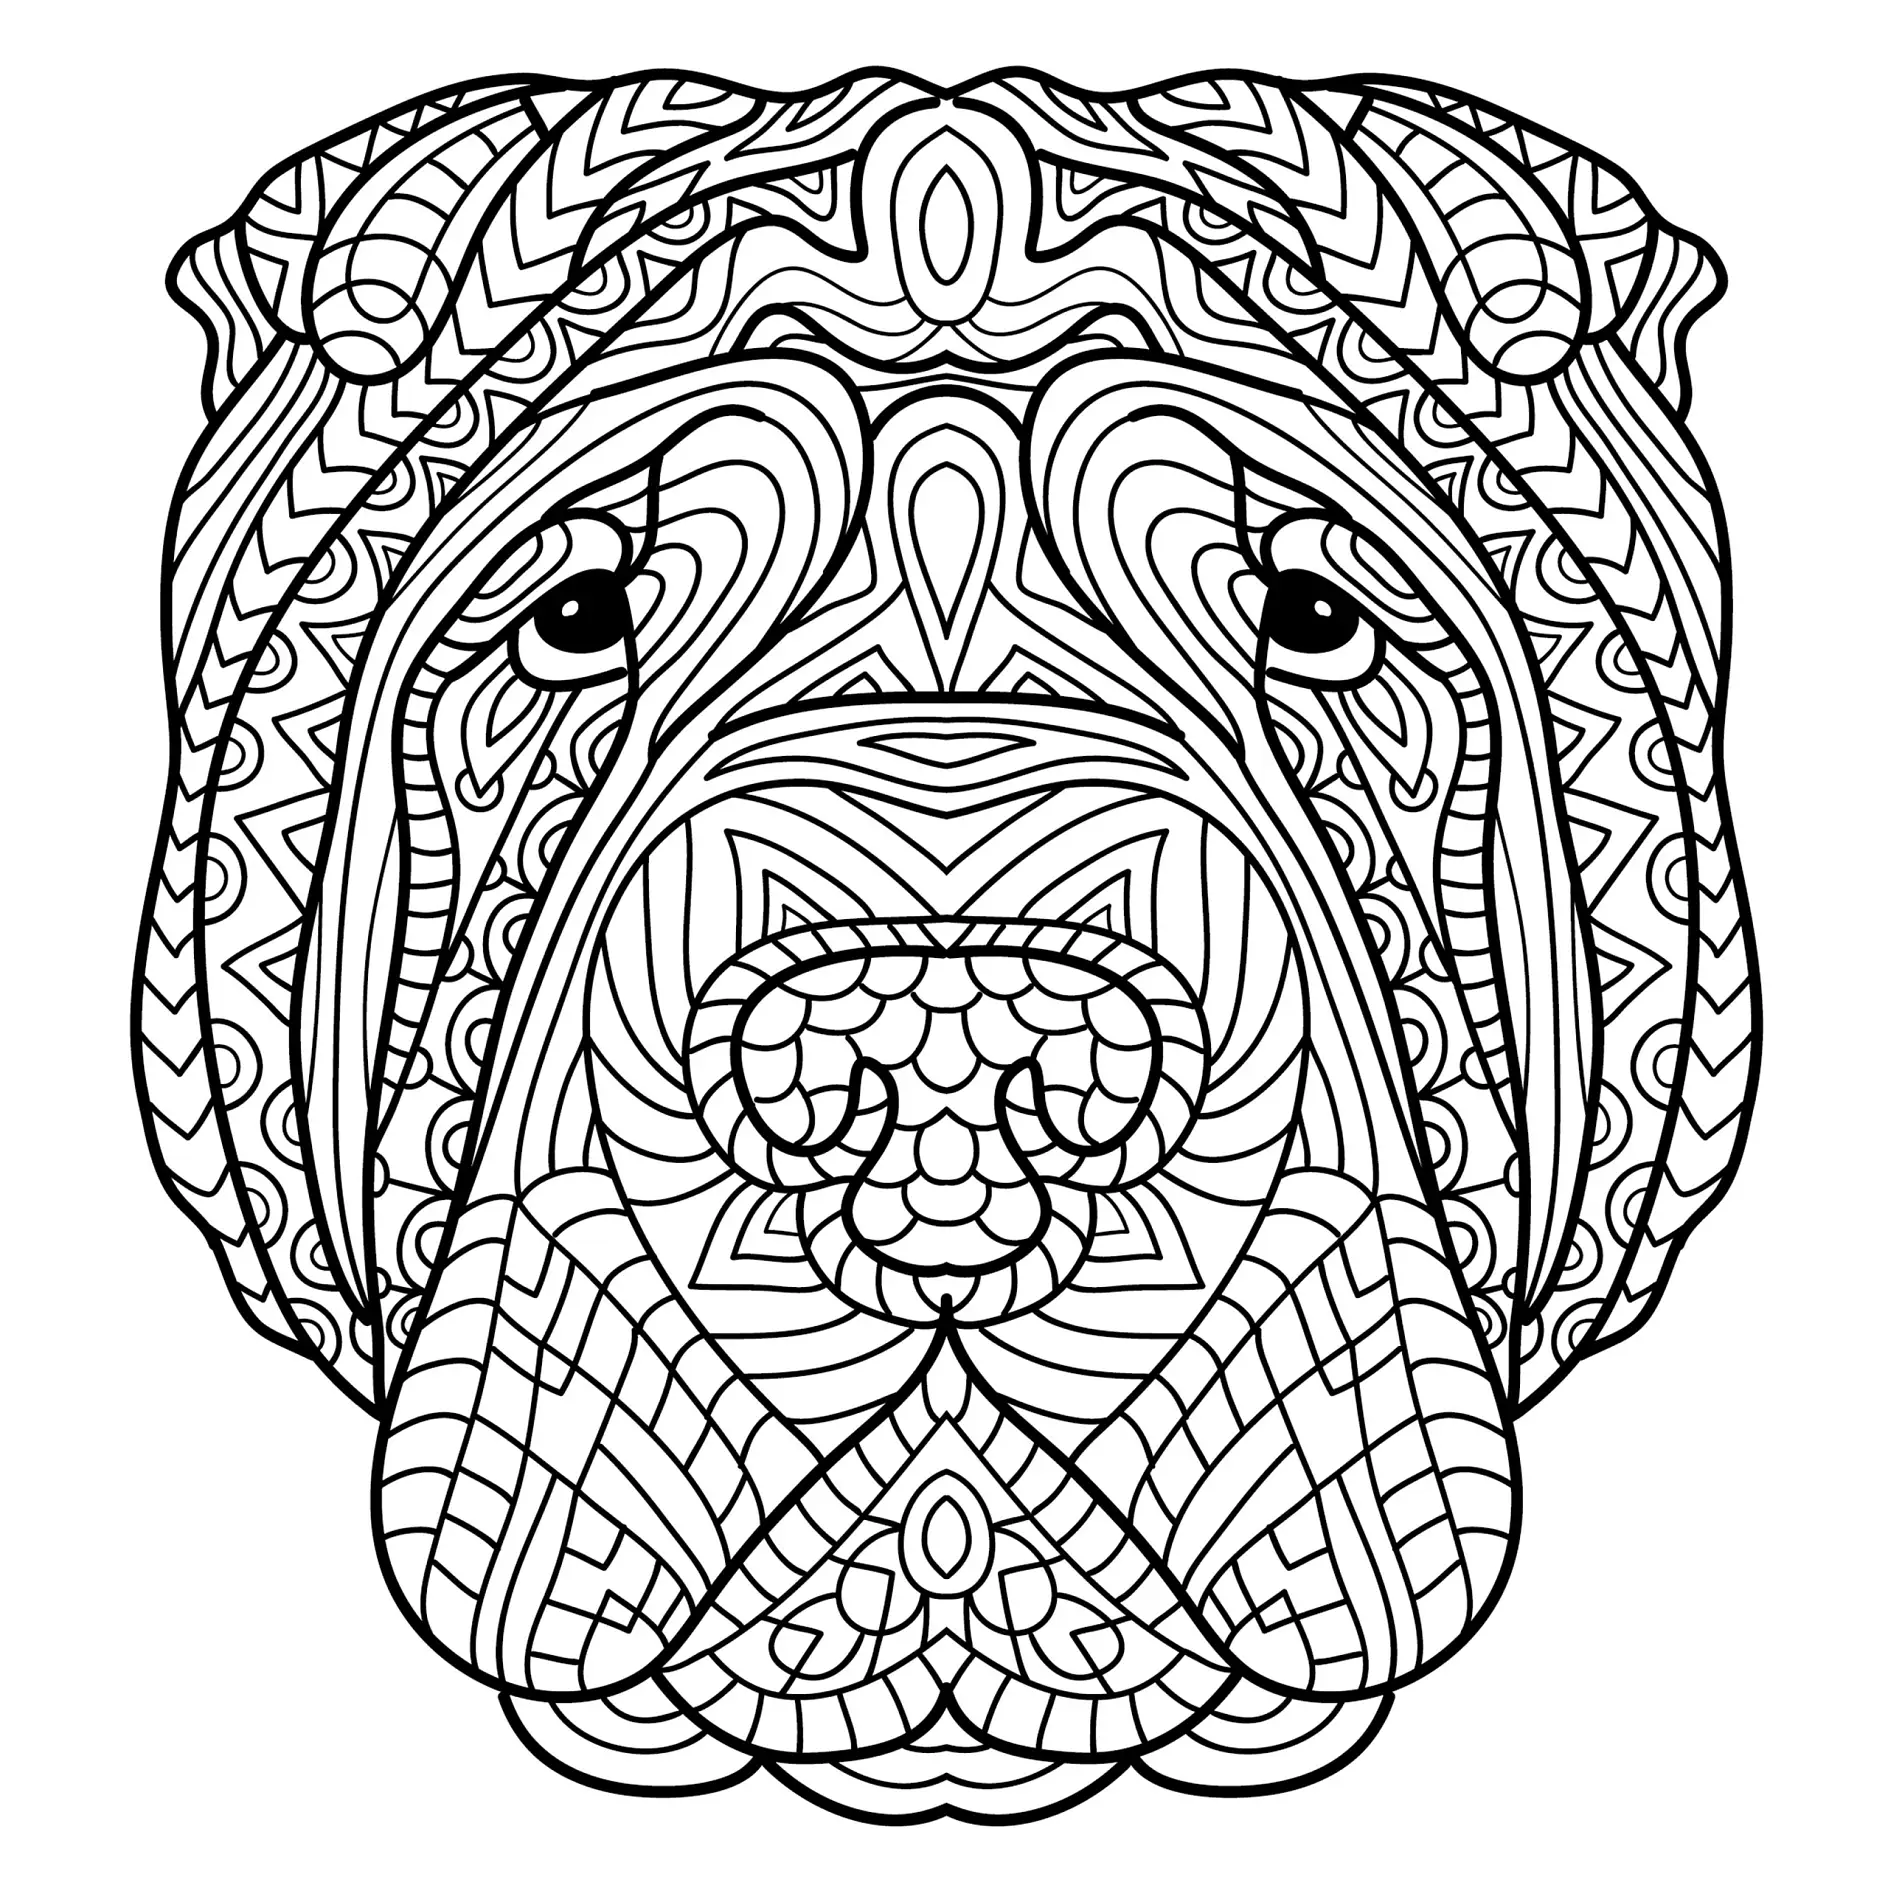 Ausmalbild Mandala mit Hund und detaillierten symmetrischen Mustern und Linien